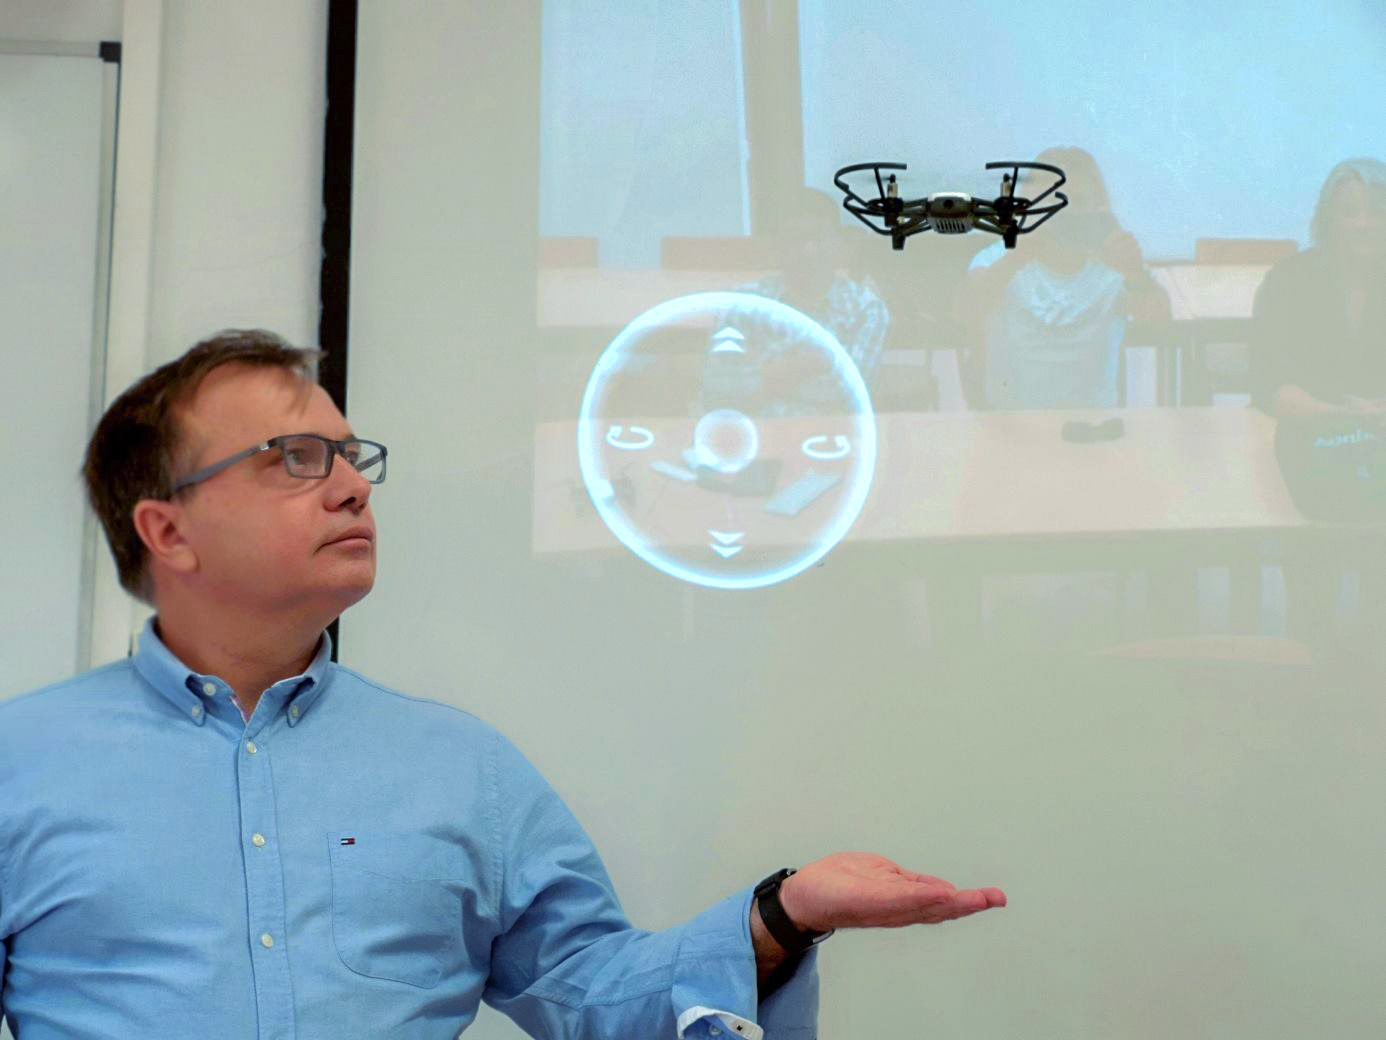 Castelo Branco: Workshop “Iniciação ao mundo dos drones com a ajuda do Tello” na EST